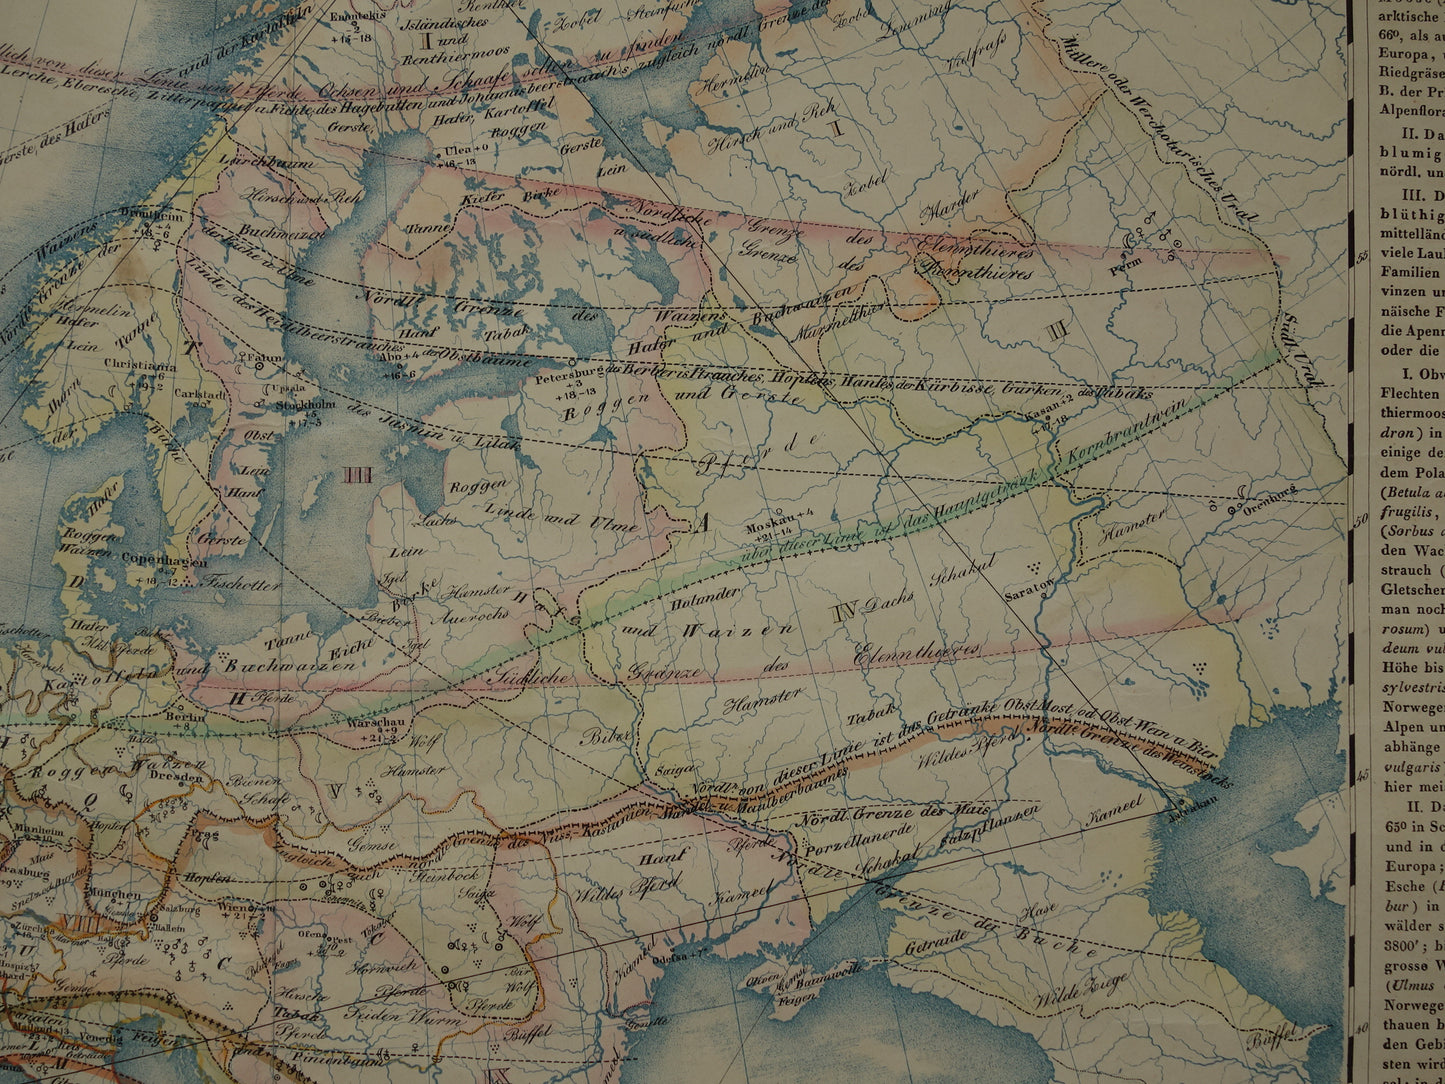 EUROPA grote oude kaart klimaat van Europa uit 1840 originele antieke landkaart Europees continent distributie planten dieren vintage poster